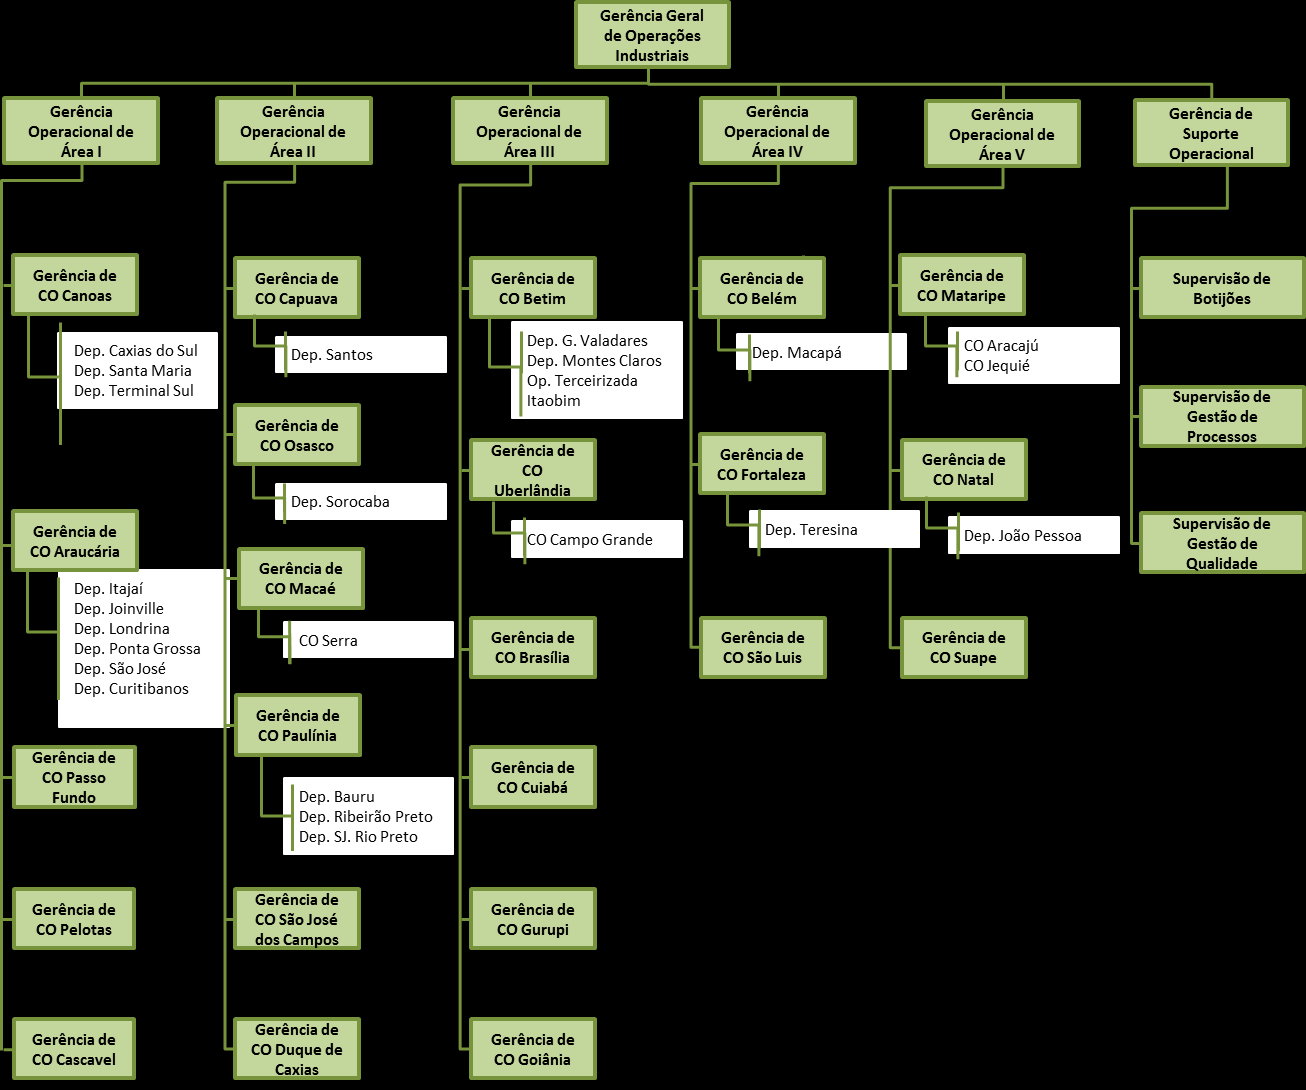 Figura 5 Estrutura da Gerência Geral de Operações Industriais com as unidades que utilizam o Sistema de Circularização de Ativos e Materiais * A Gerência de Suporte Operacional é a gestora da